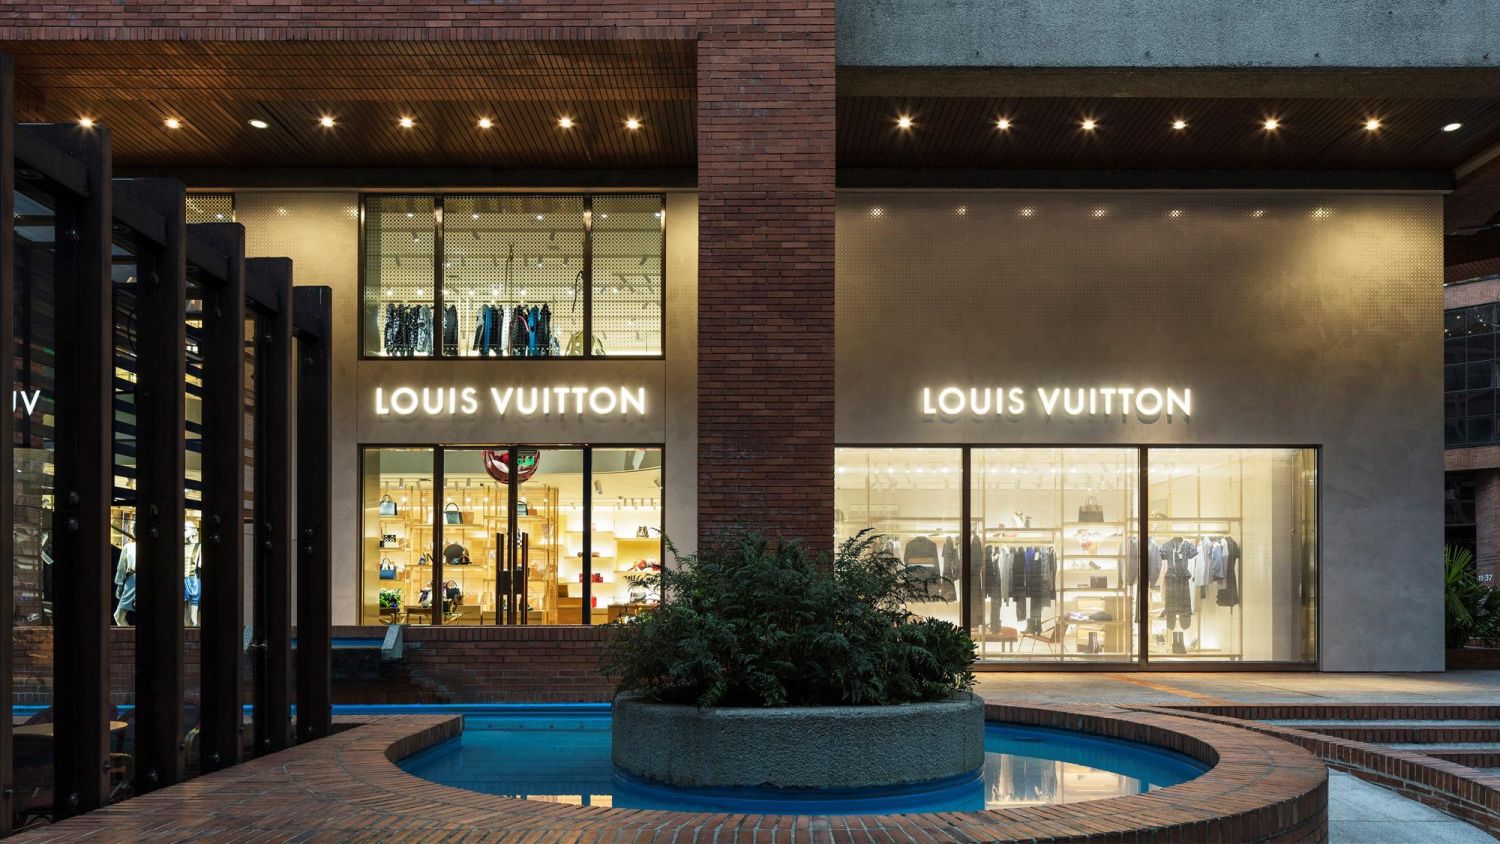 Louis Vuitton rediseña el maletín para volver a la oficina